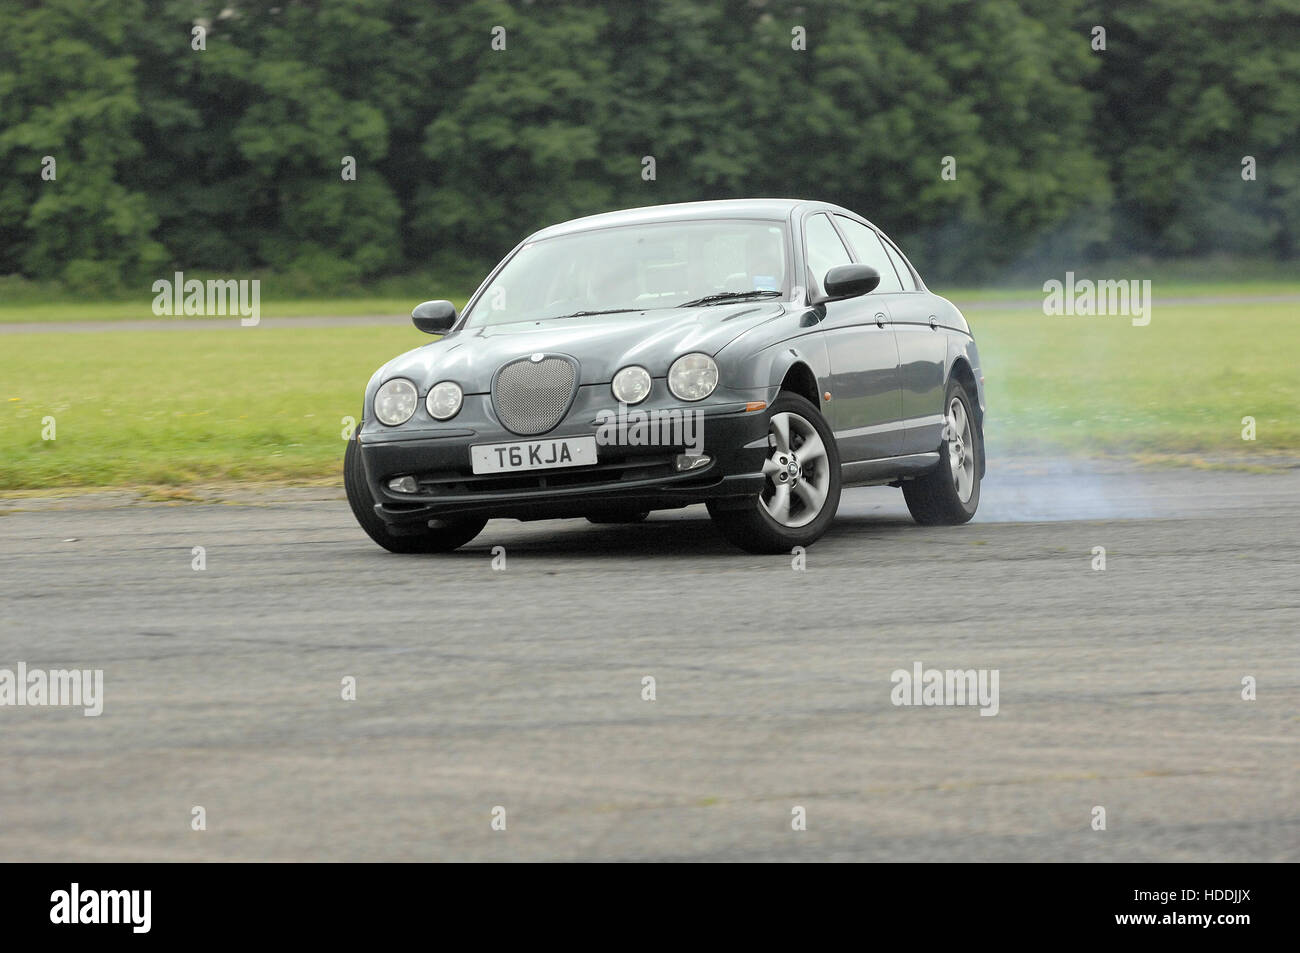 Jaguar S-type car smoking tyres and drifting Stock Photo